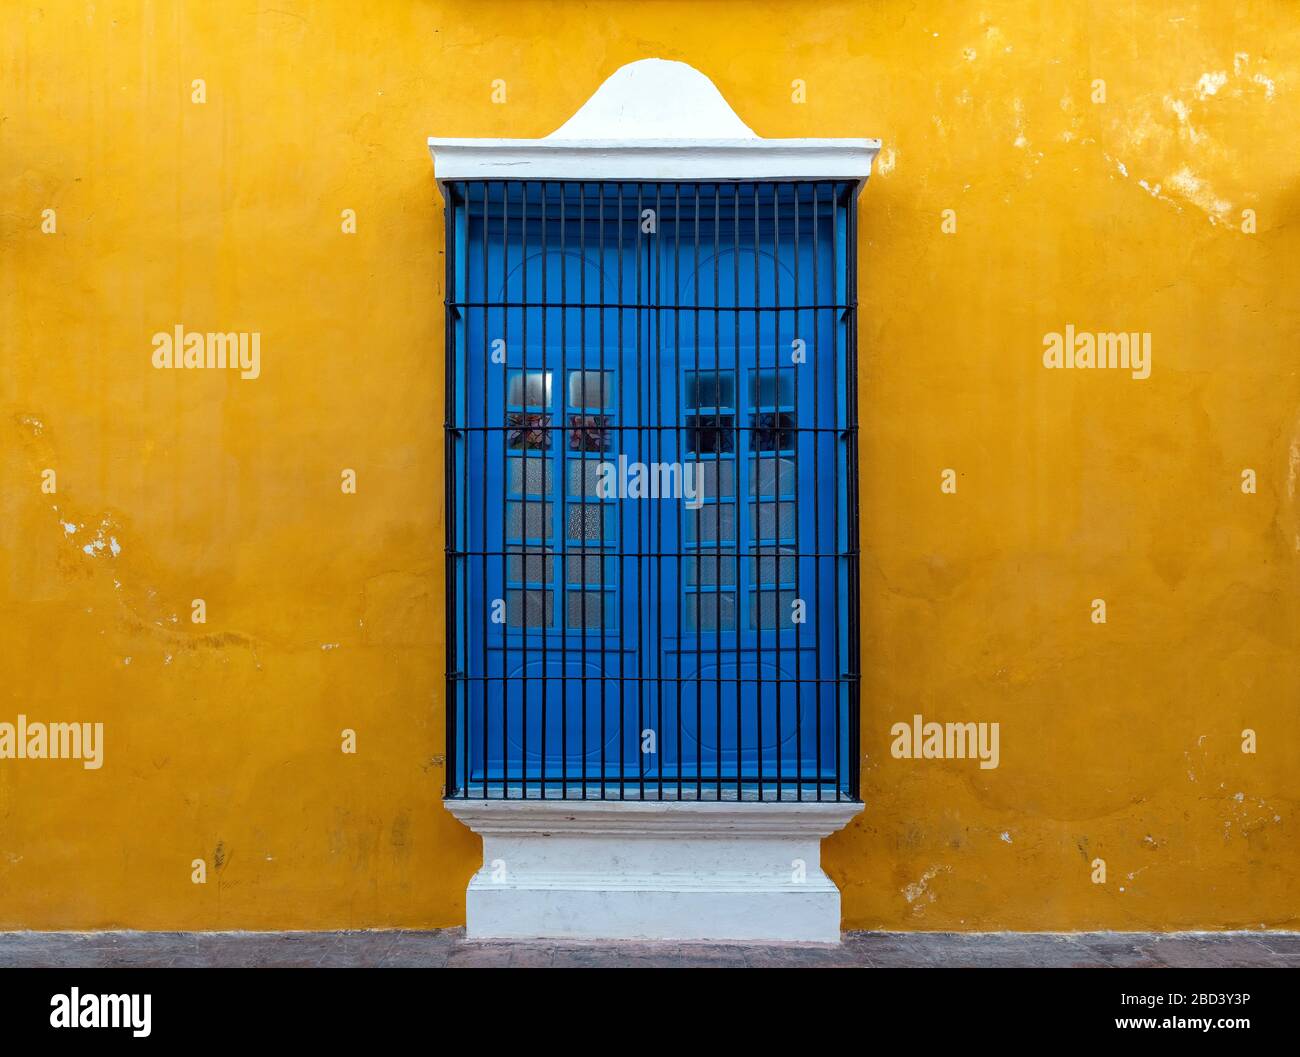 Ein blaues Fenster an einer gelben Wand, eine bunte Fassade im historischen Stadtzentrum von Campeche, Yucatan-Halbinsel, Mexiko. Stockfoto